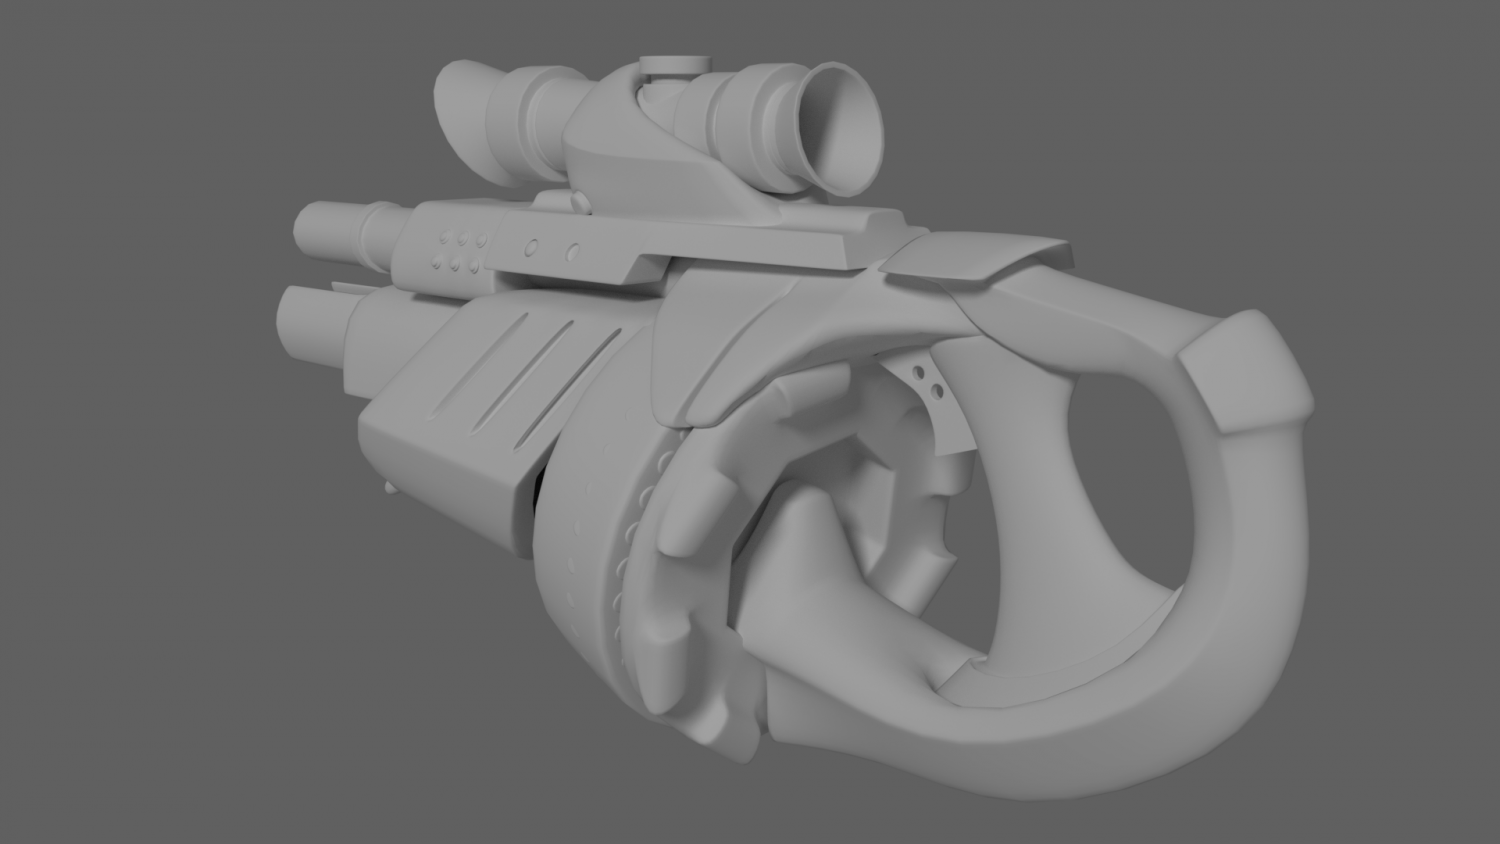 3D Concept rifle model